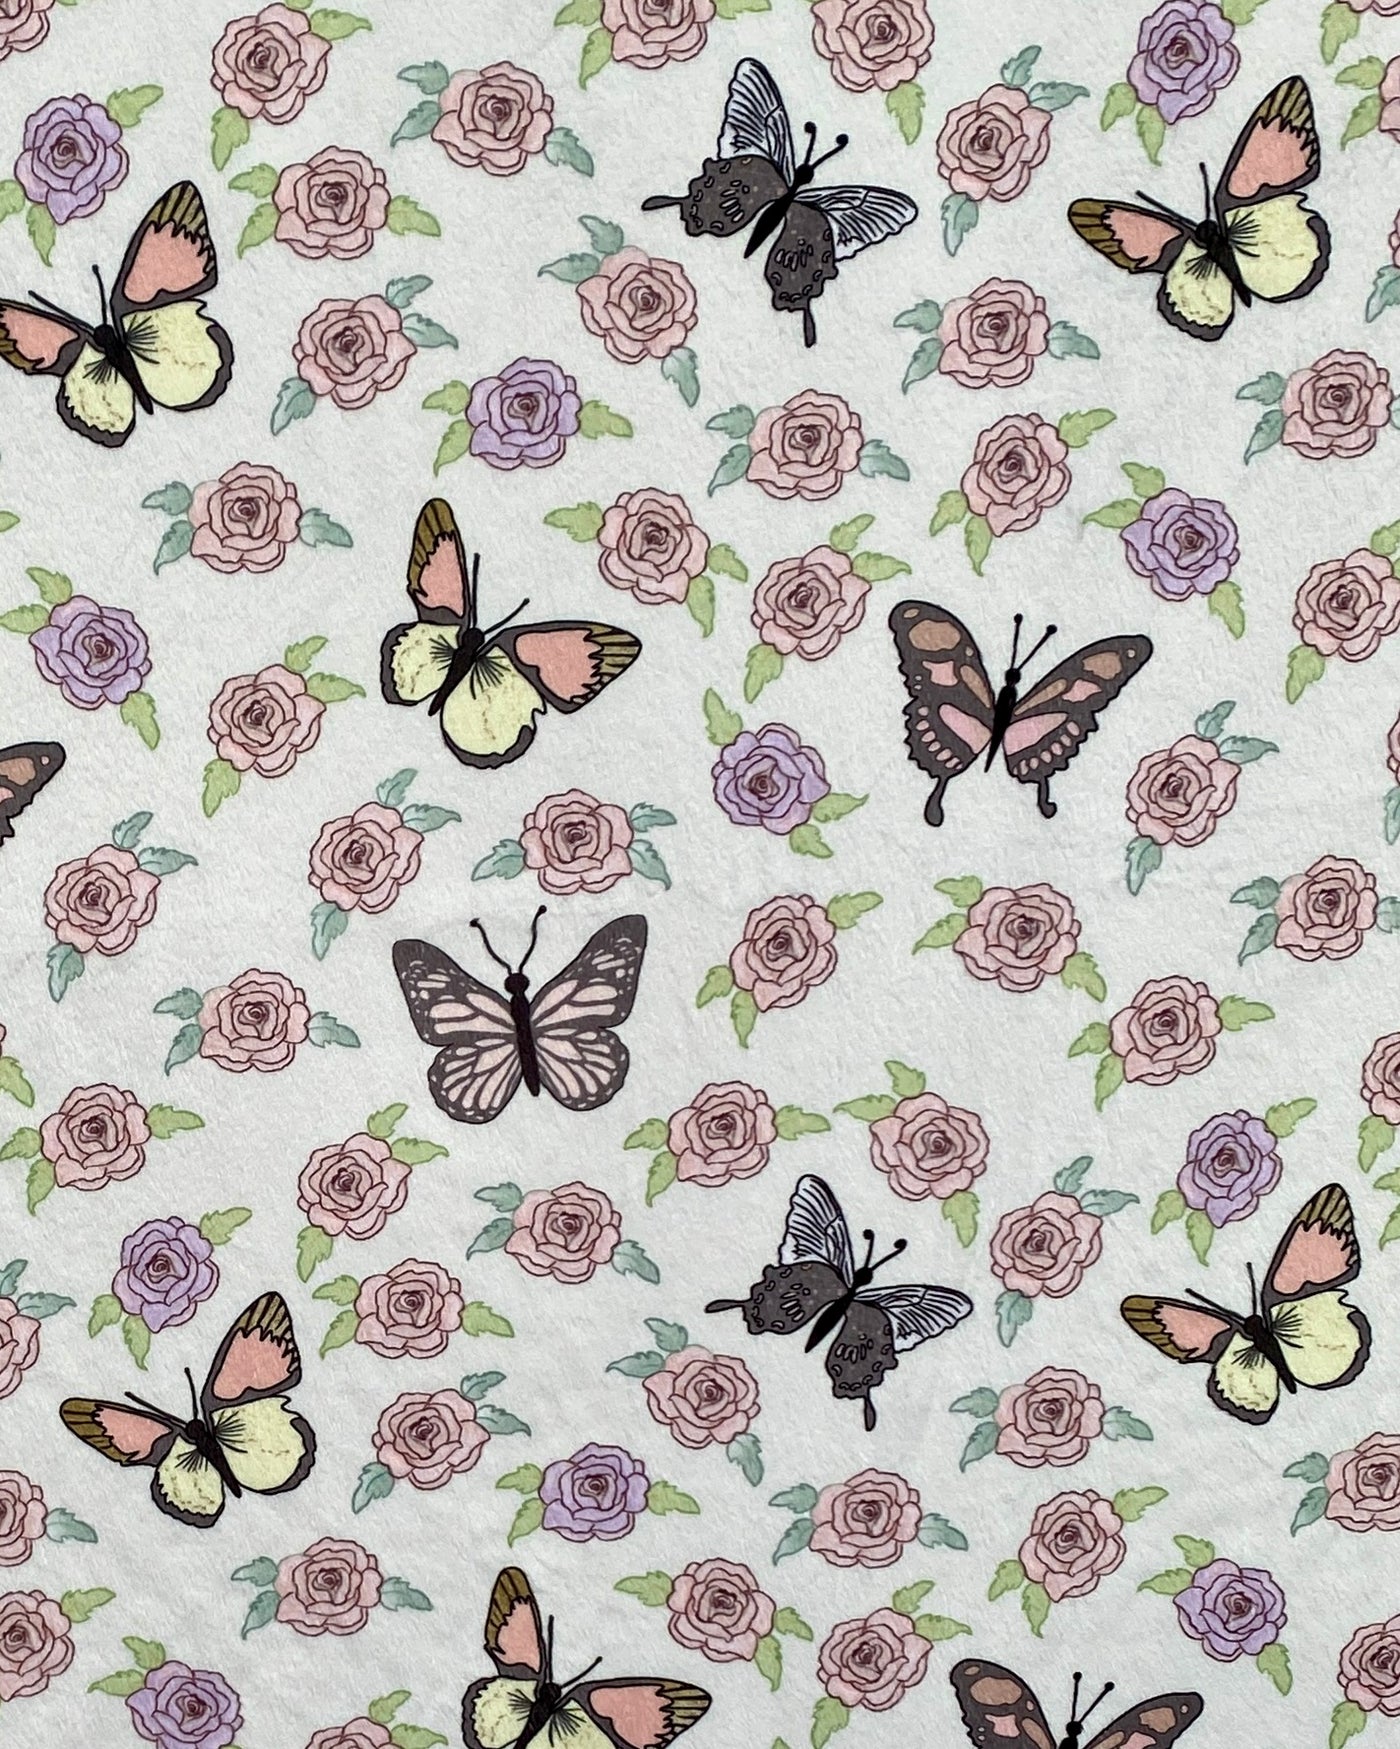 Couverture Géante : Papillons dans un jardin de roses (minky rose)